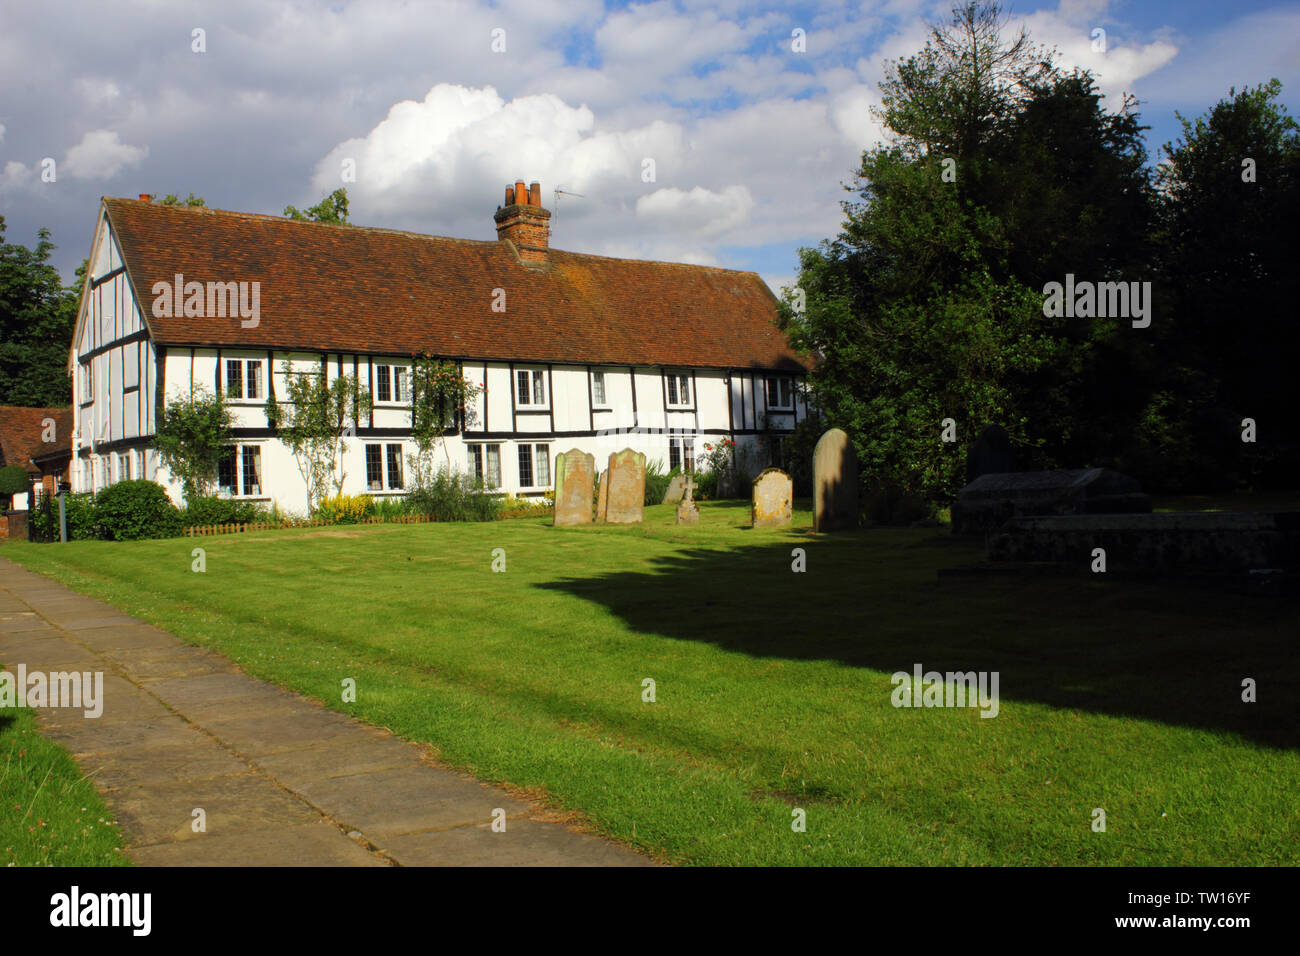 North Mymms Ort & Park, Hertfordshire, England - St. Mary's, die Pfarrkirche, Friedhof und Cottages Stockfoto